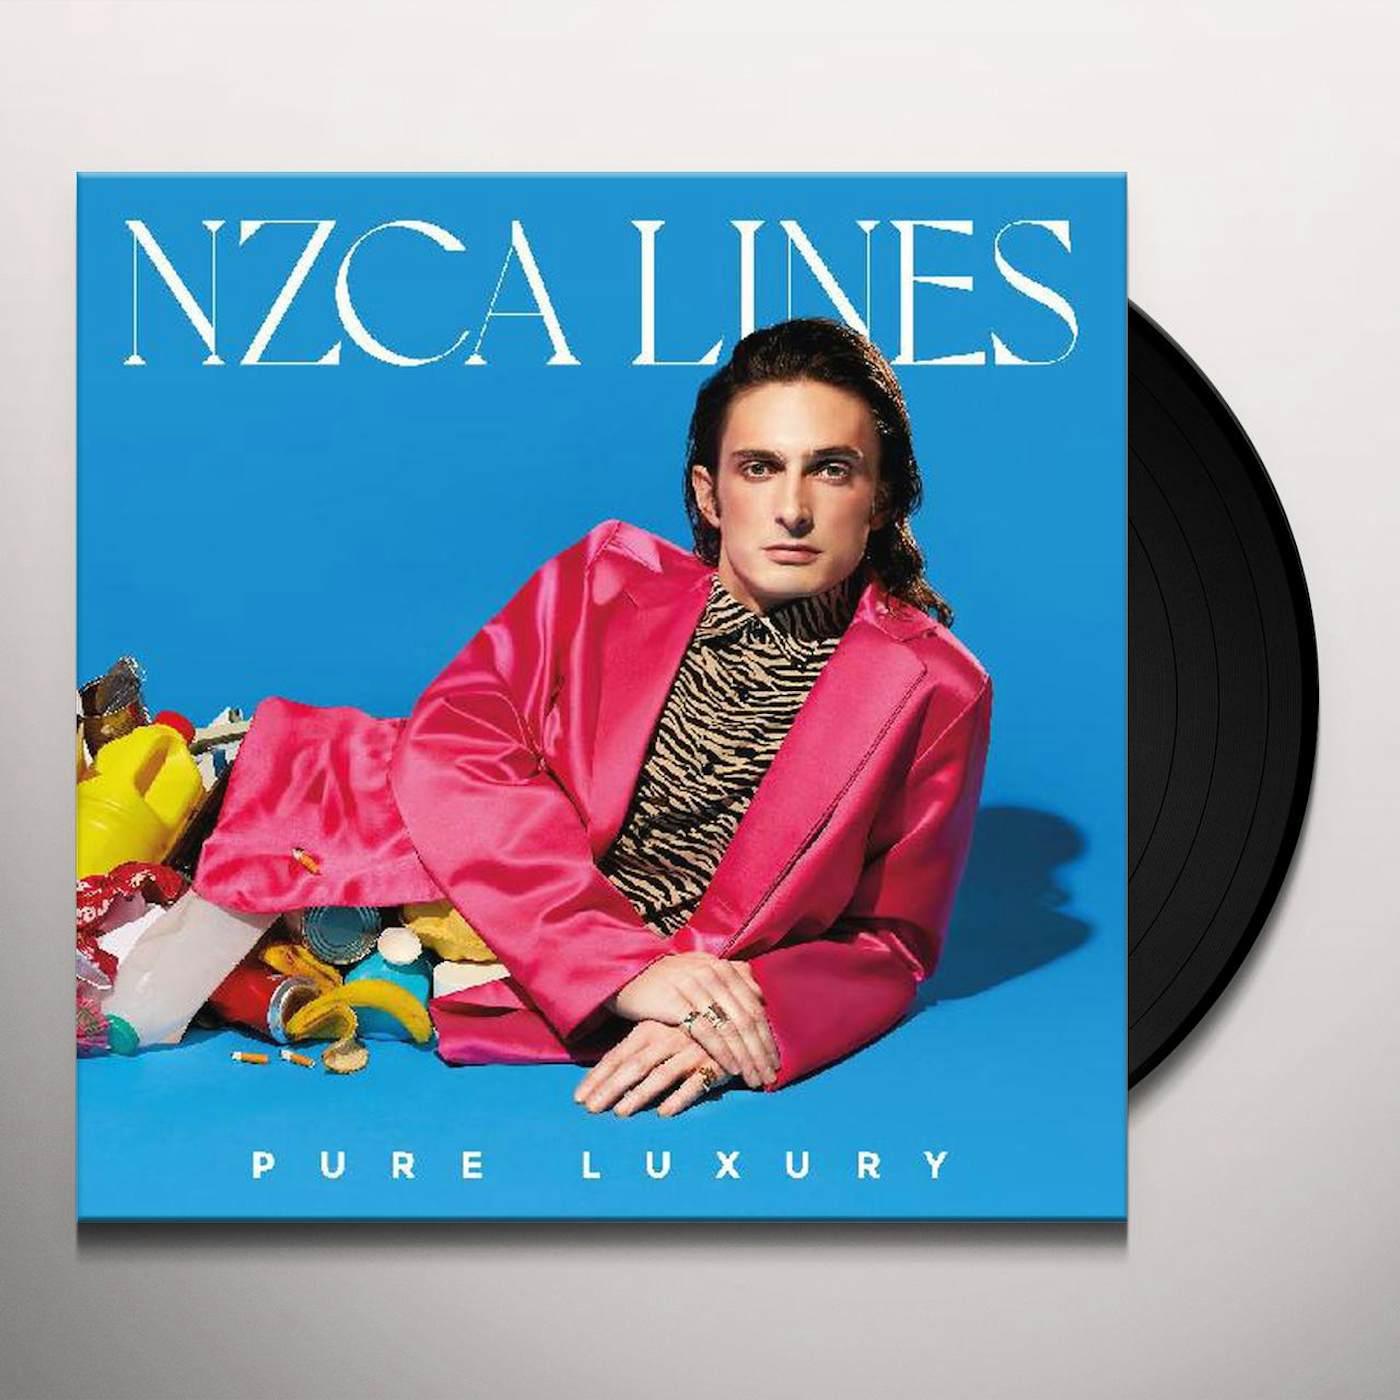 NZCA LINES Pure Luxury Vinyl Record